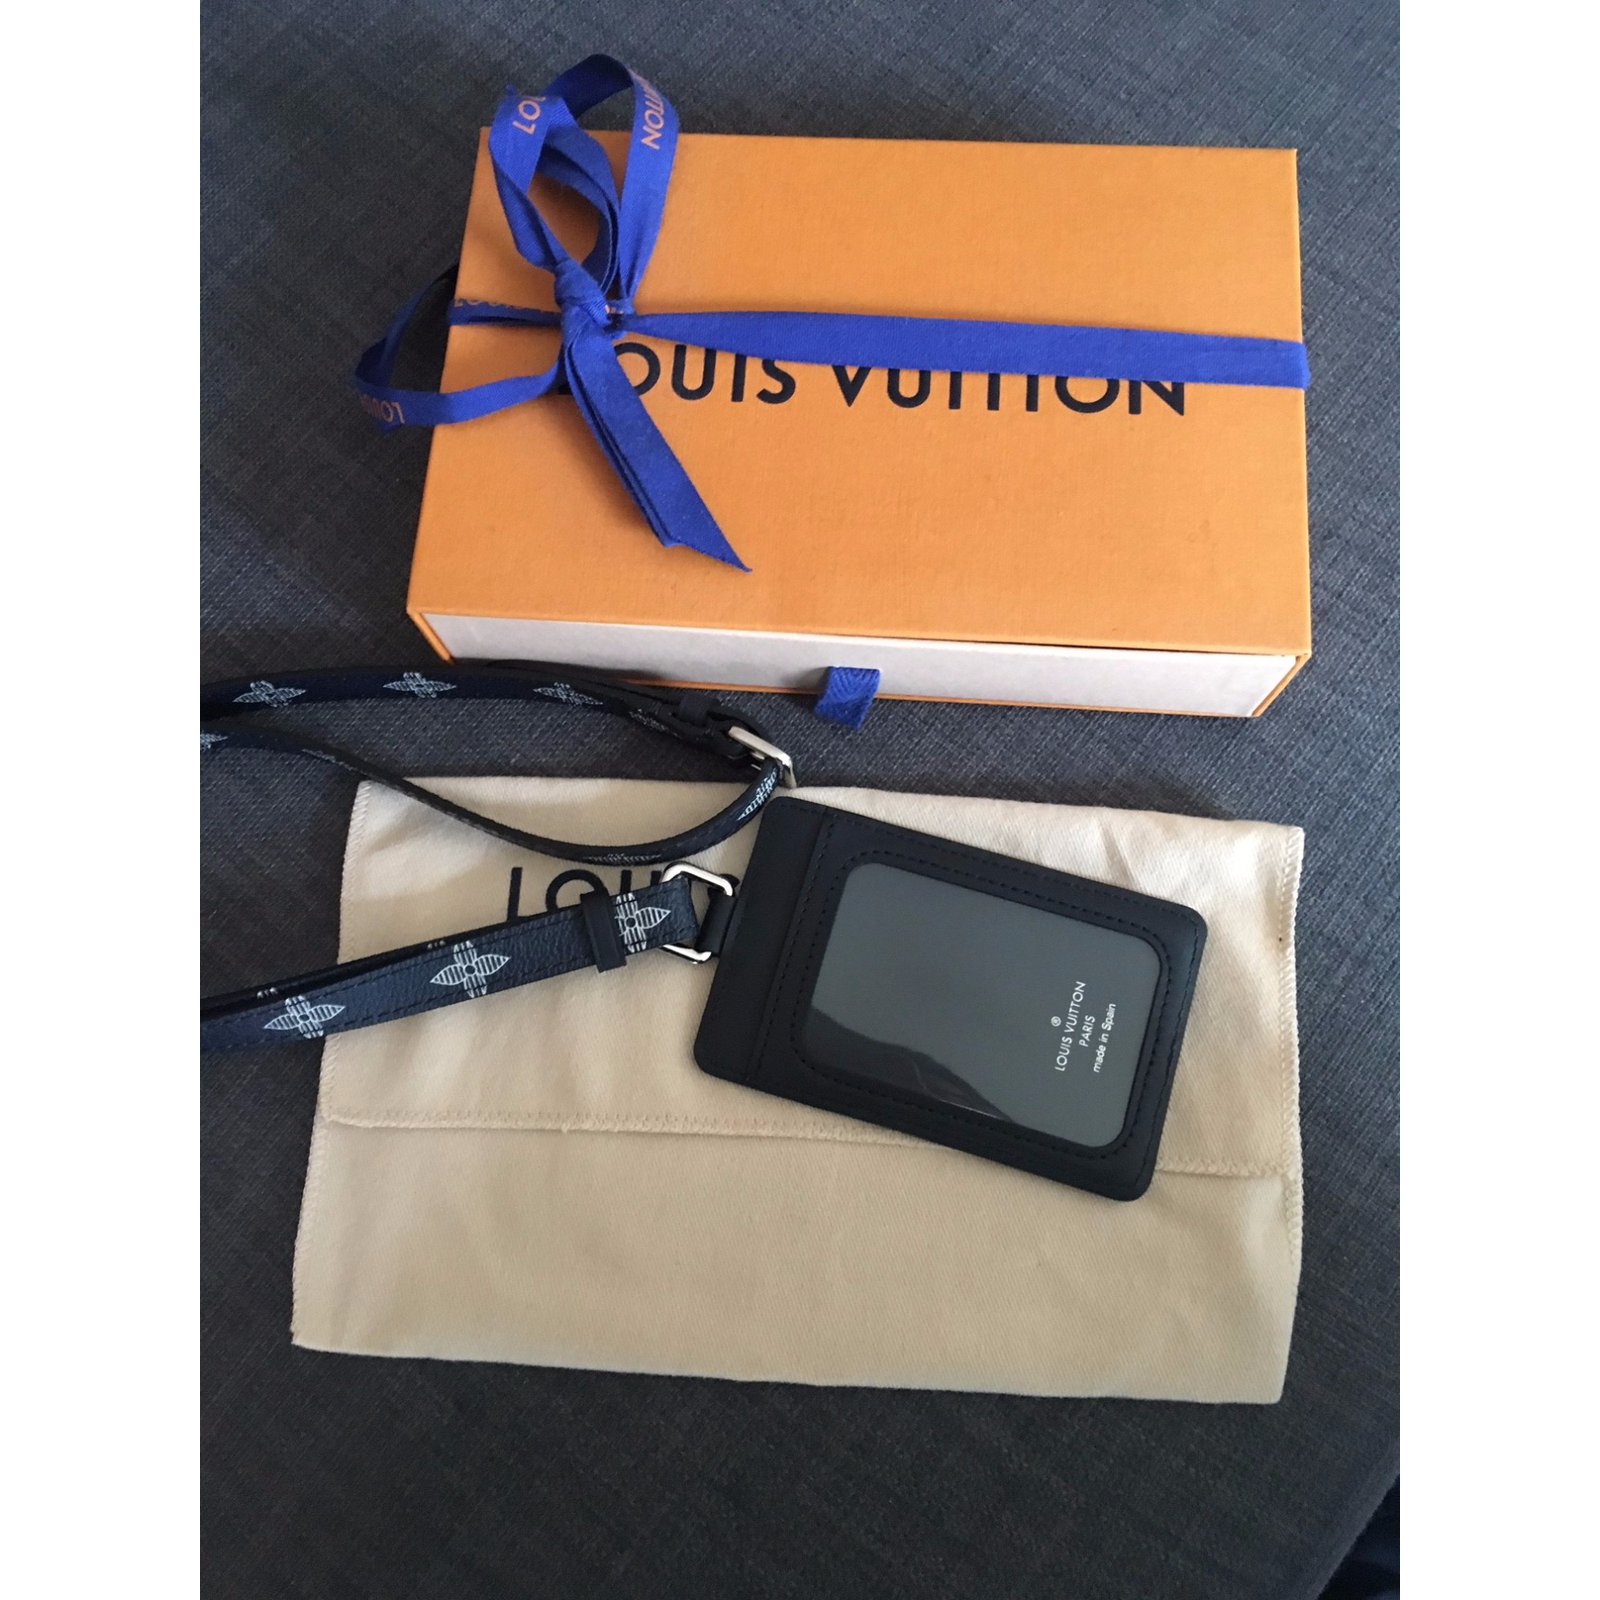 Authentic LOUIS VUITTON Chapman Porte Badge ID Card Holder Case